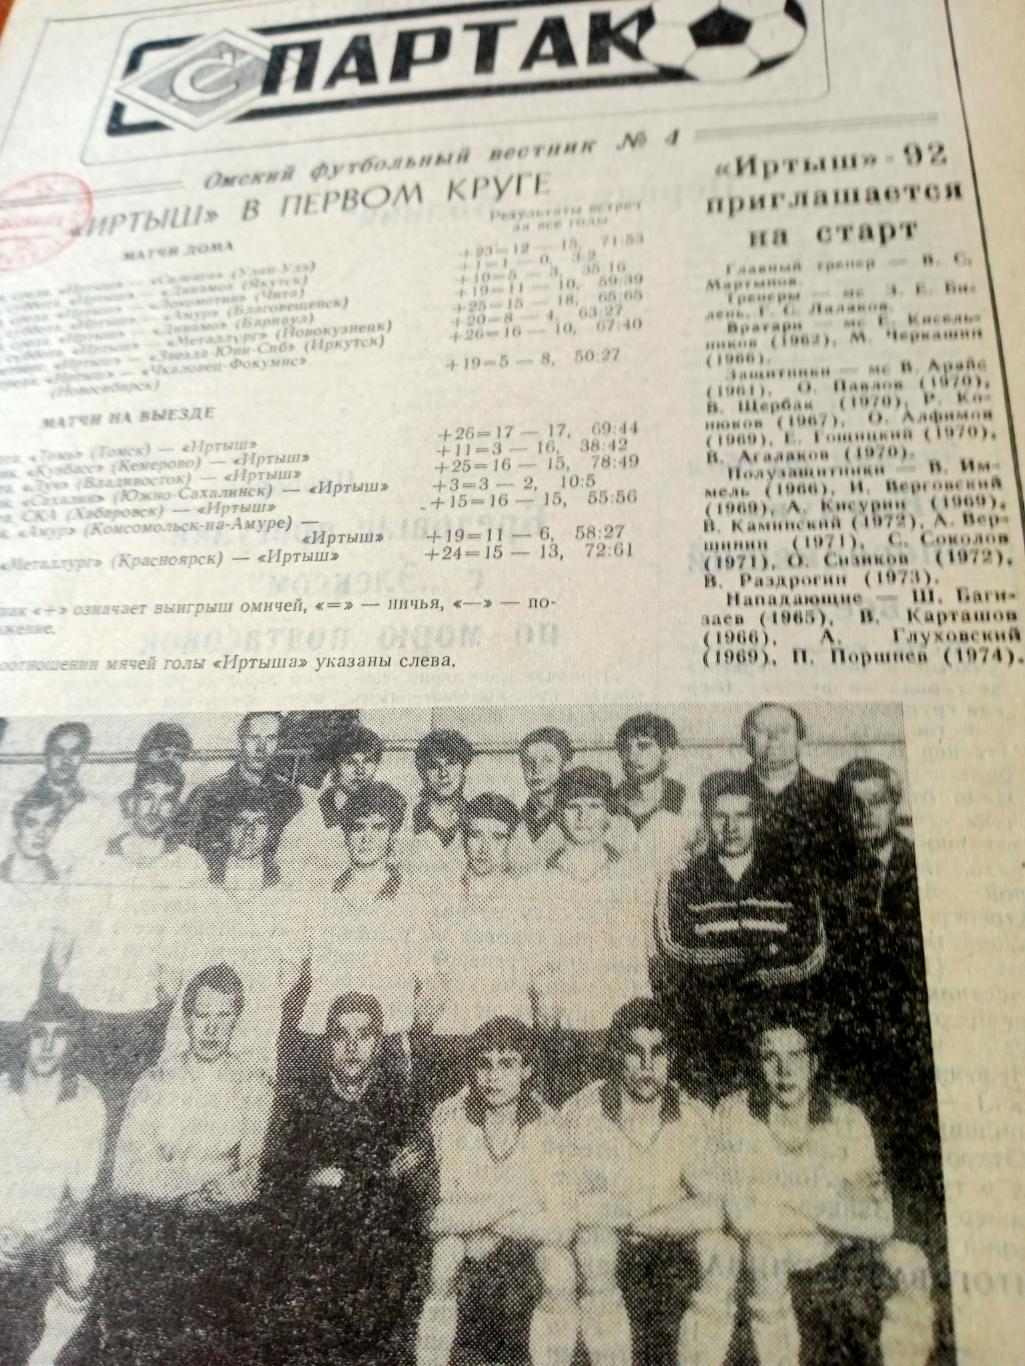 Спартак. Омский футбольный вестник. №4. 1992 год